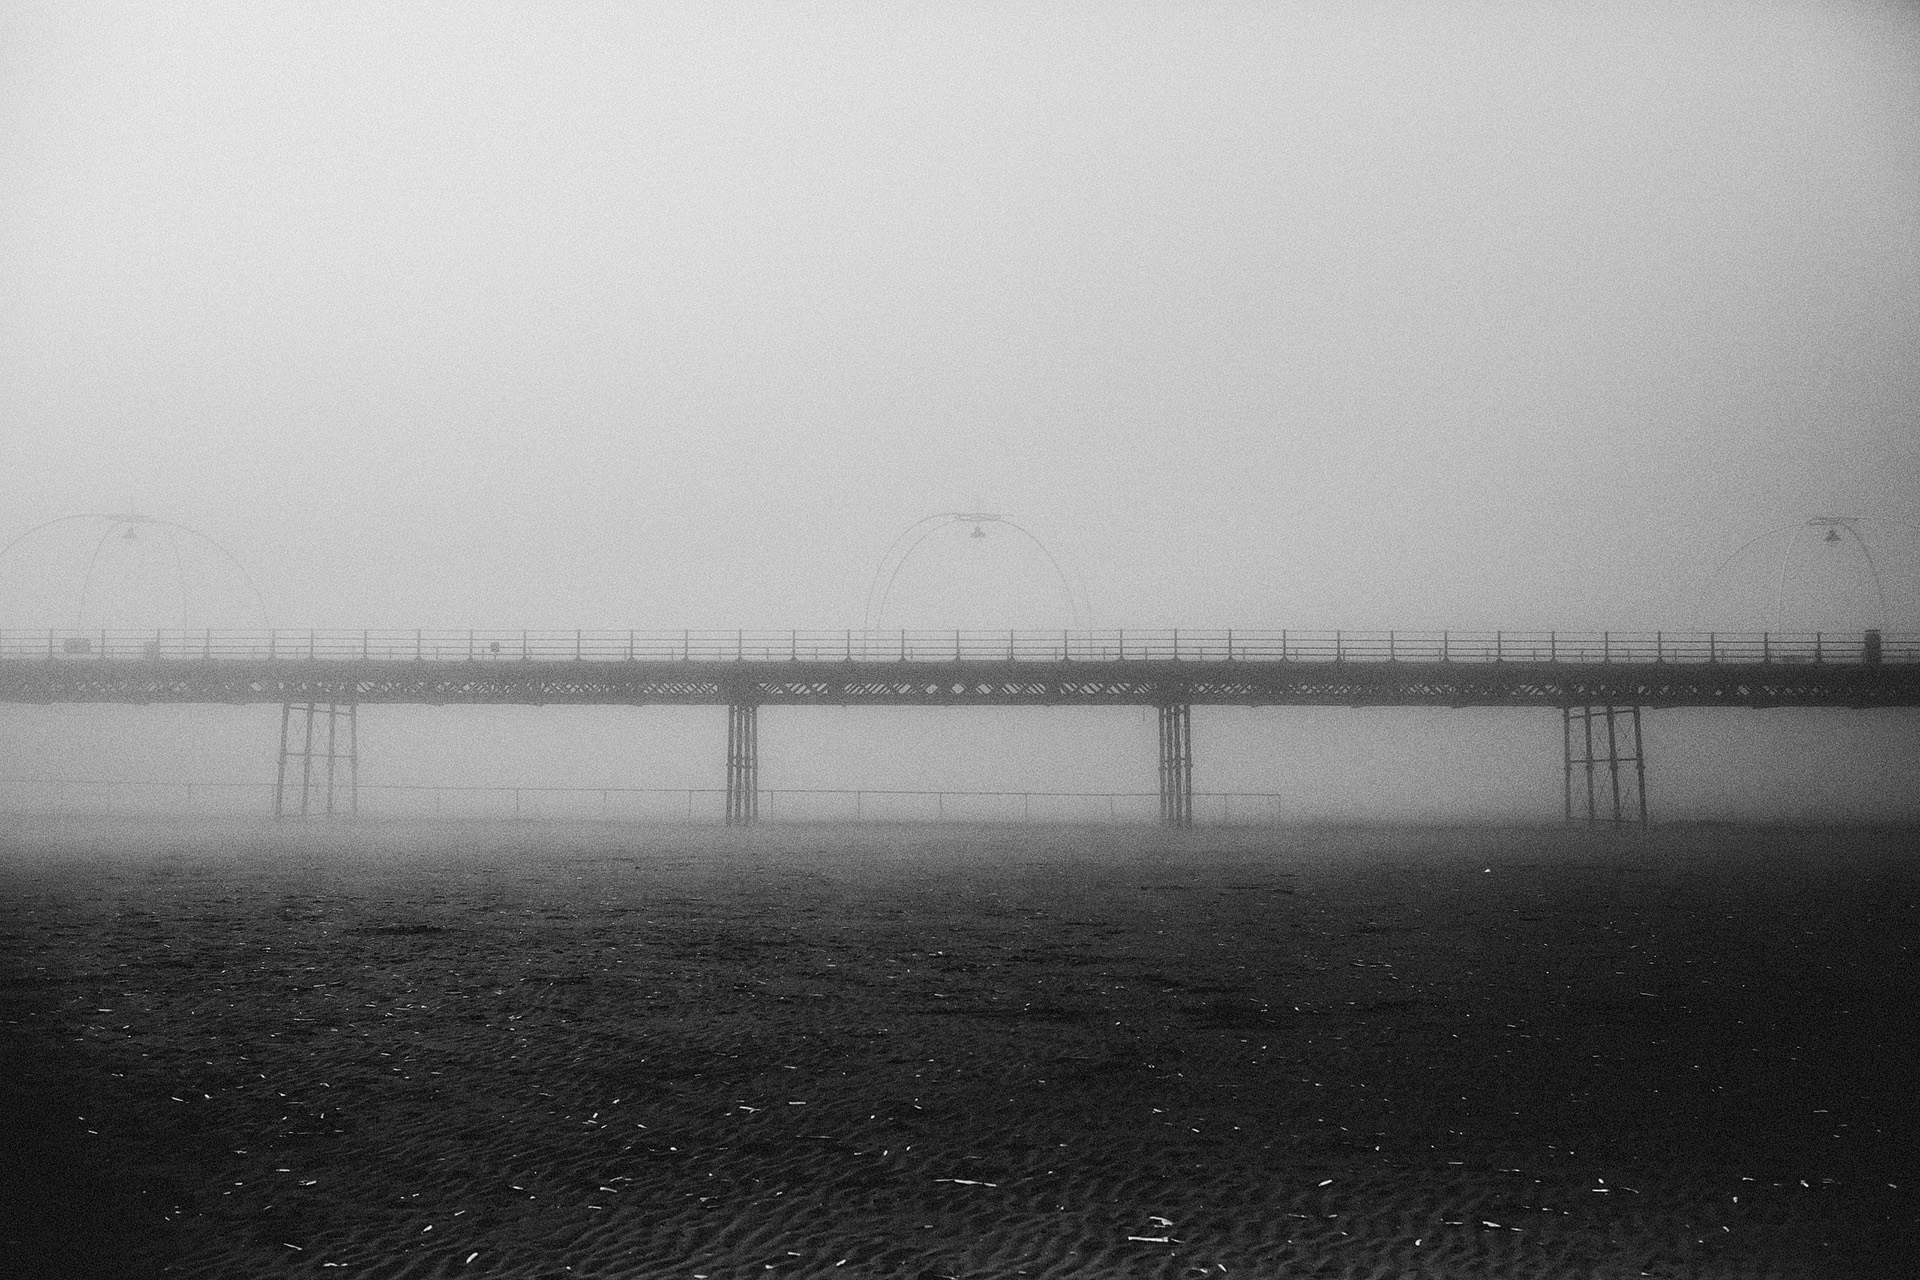 more fog